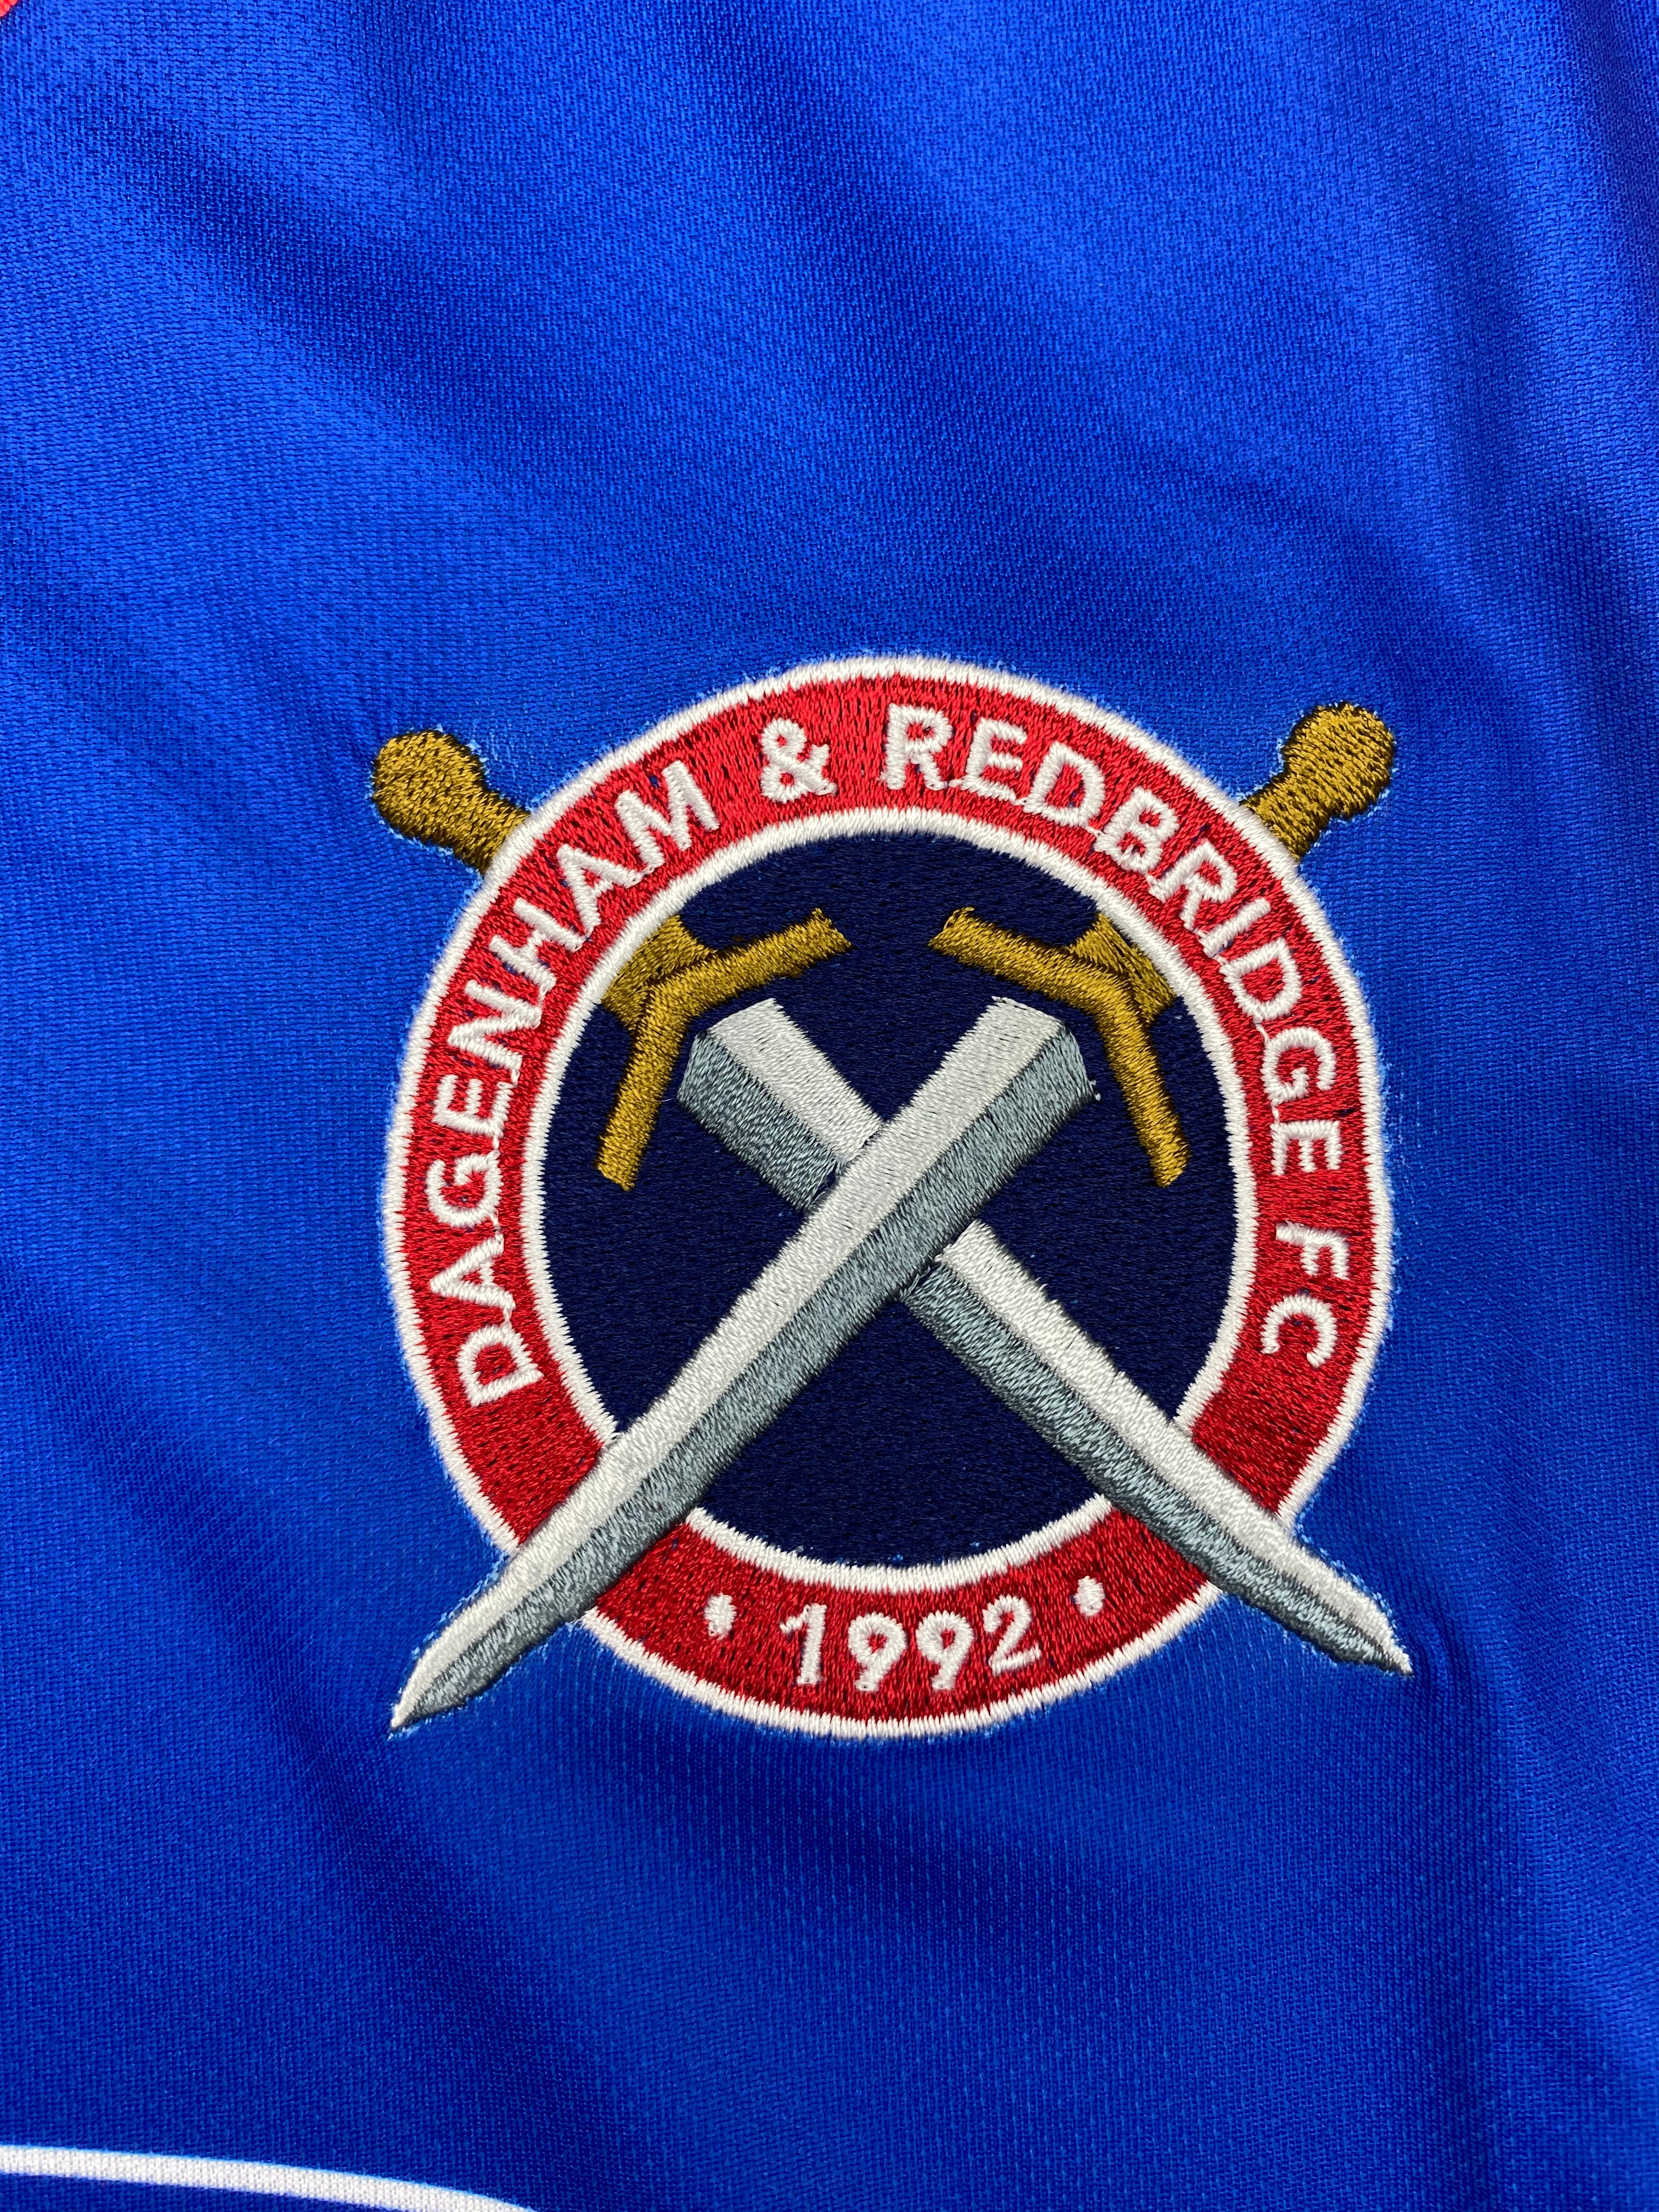 2017/19 Dagenham & Redbridge Home Shirt (S) BNIB